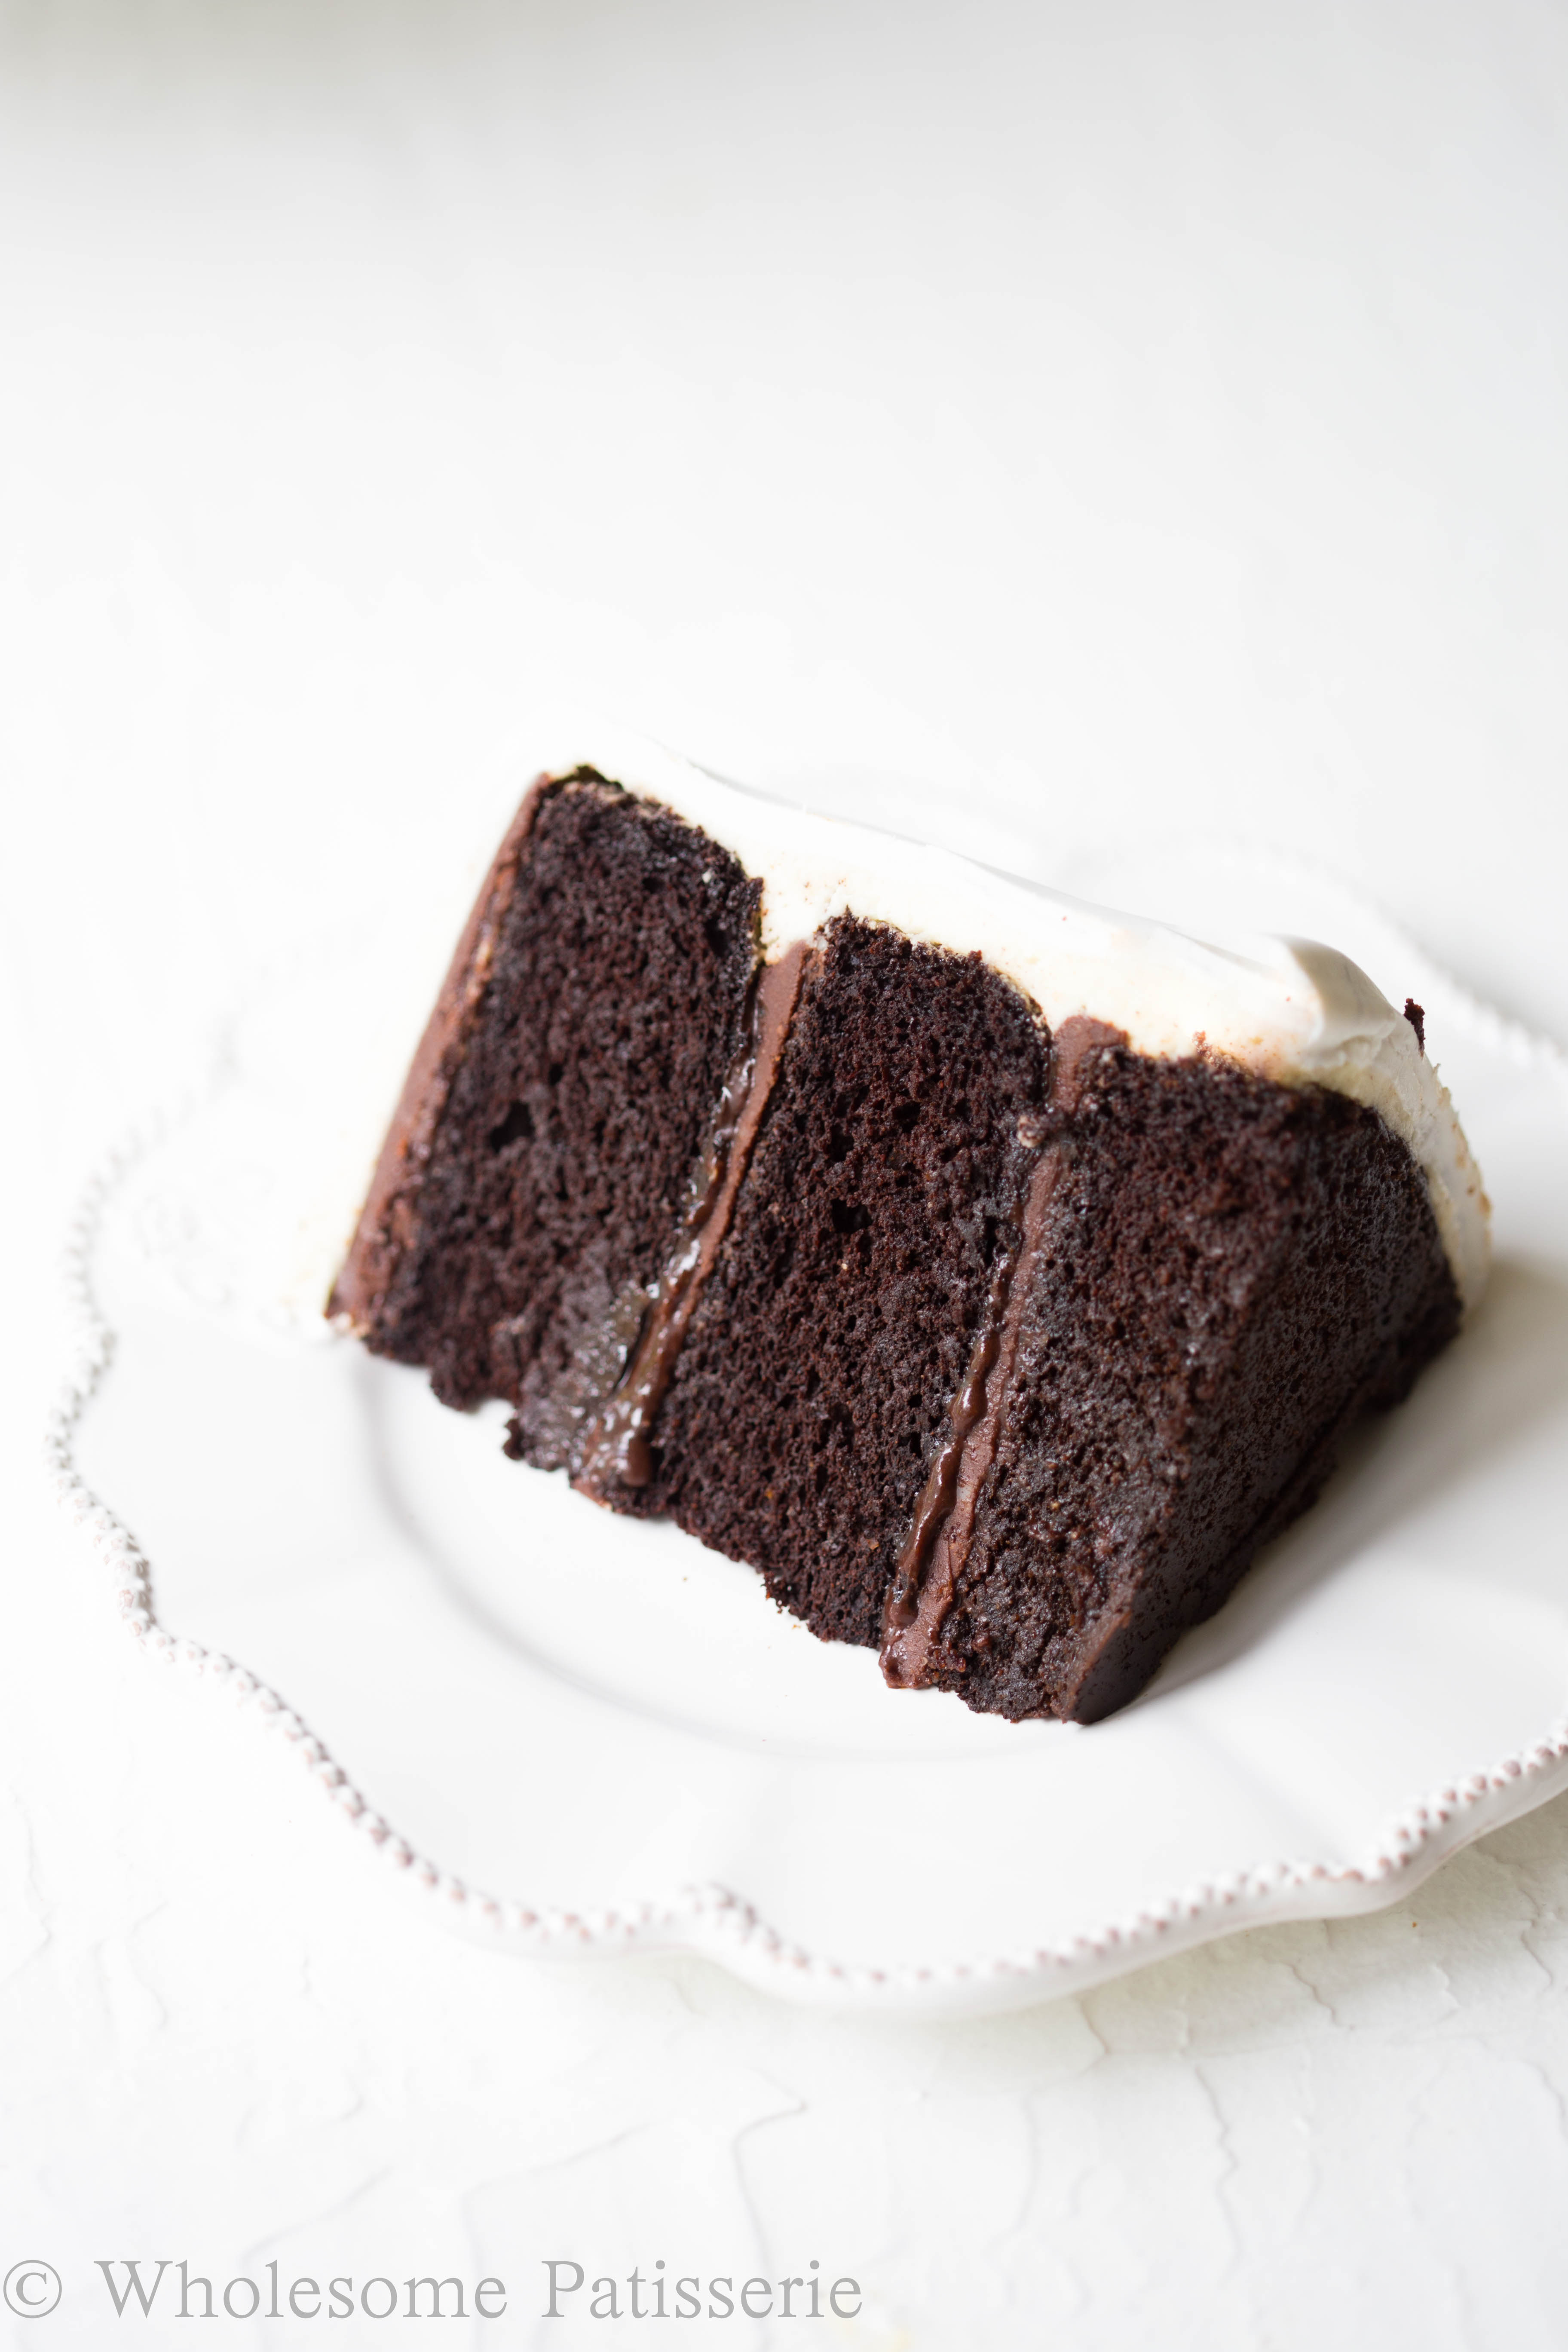 marble-fondant-cake-chocolate-cake-decoration-glutenfree-wedding-cake